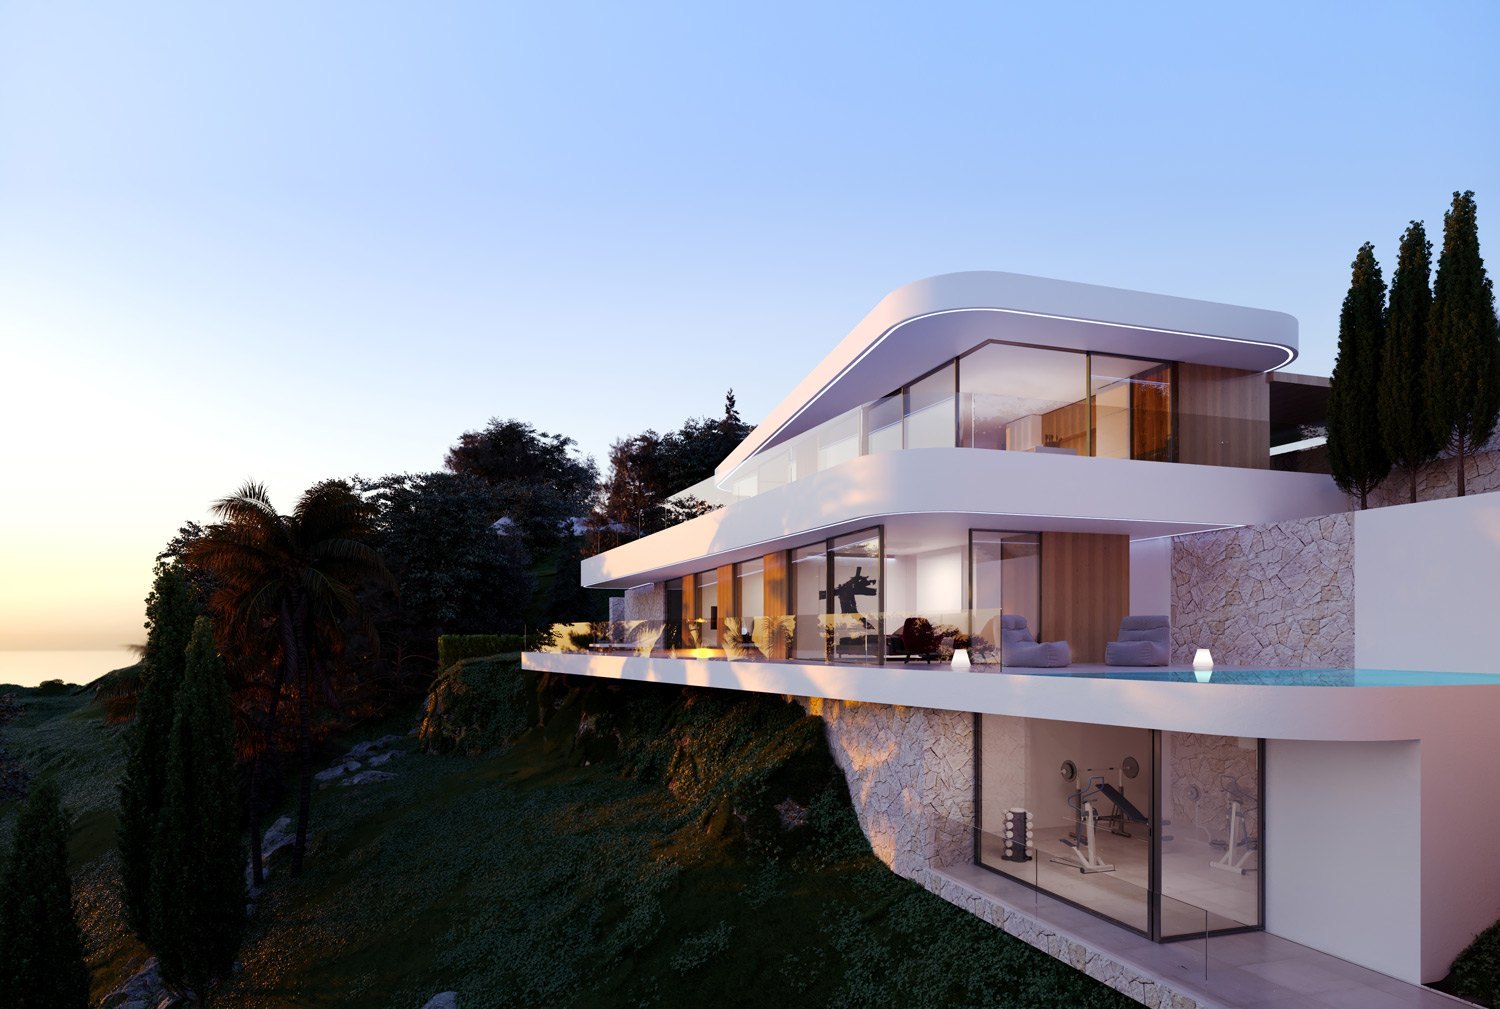 Incroyable nouvelle villa avec vue sur la mer Méditerranée